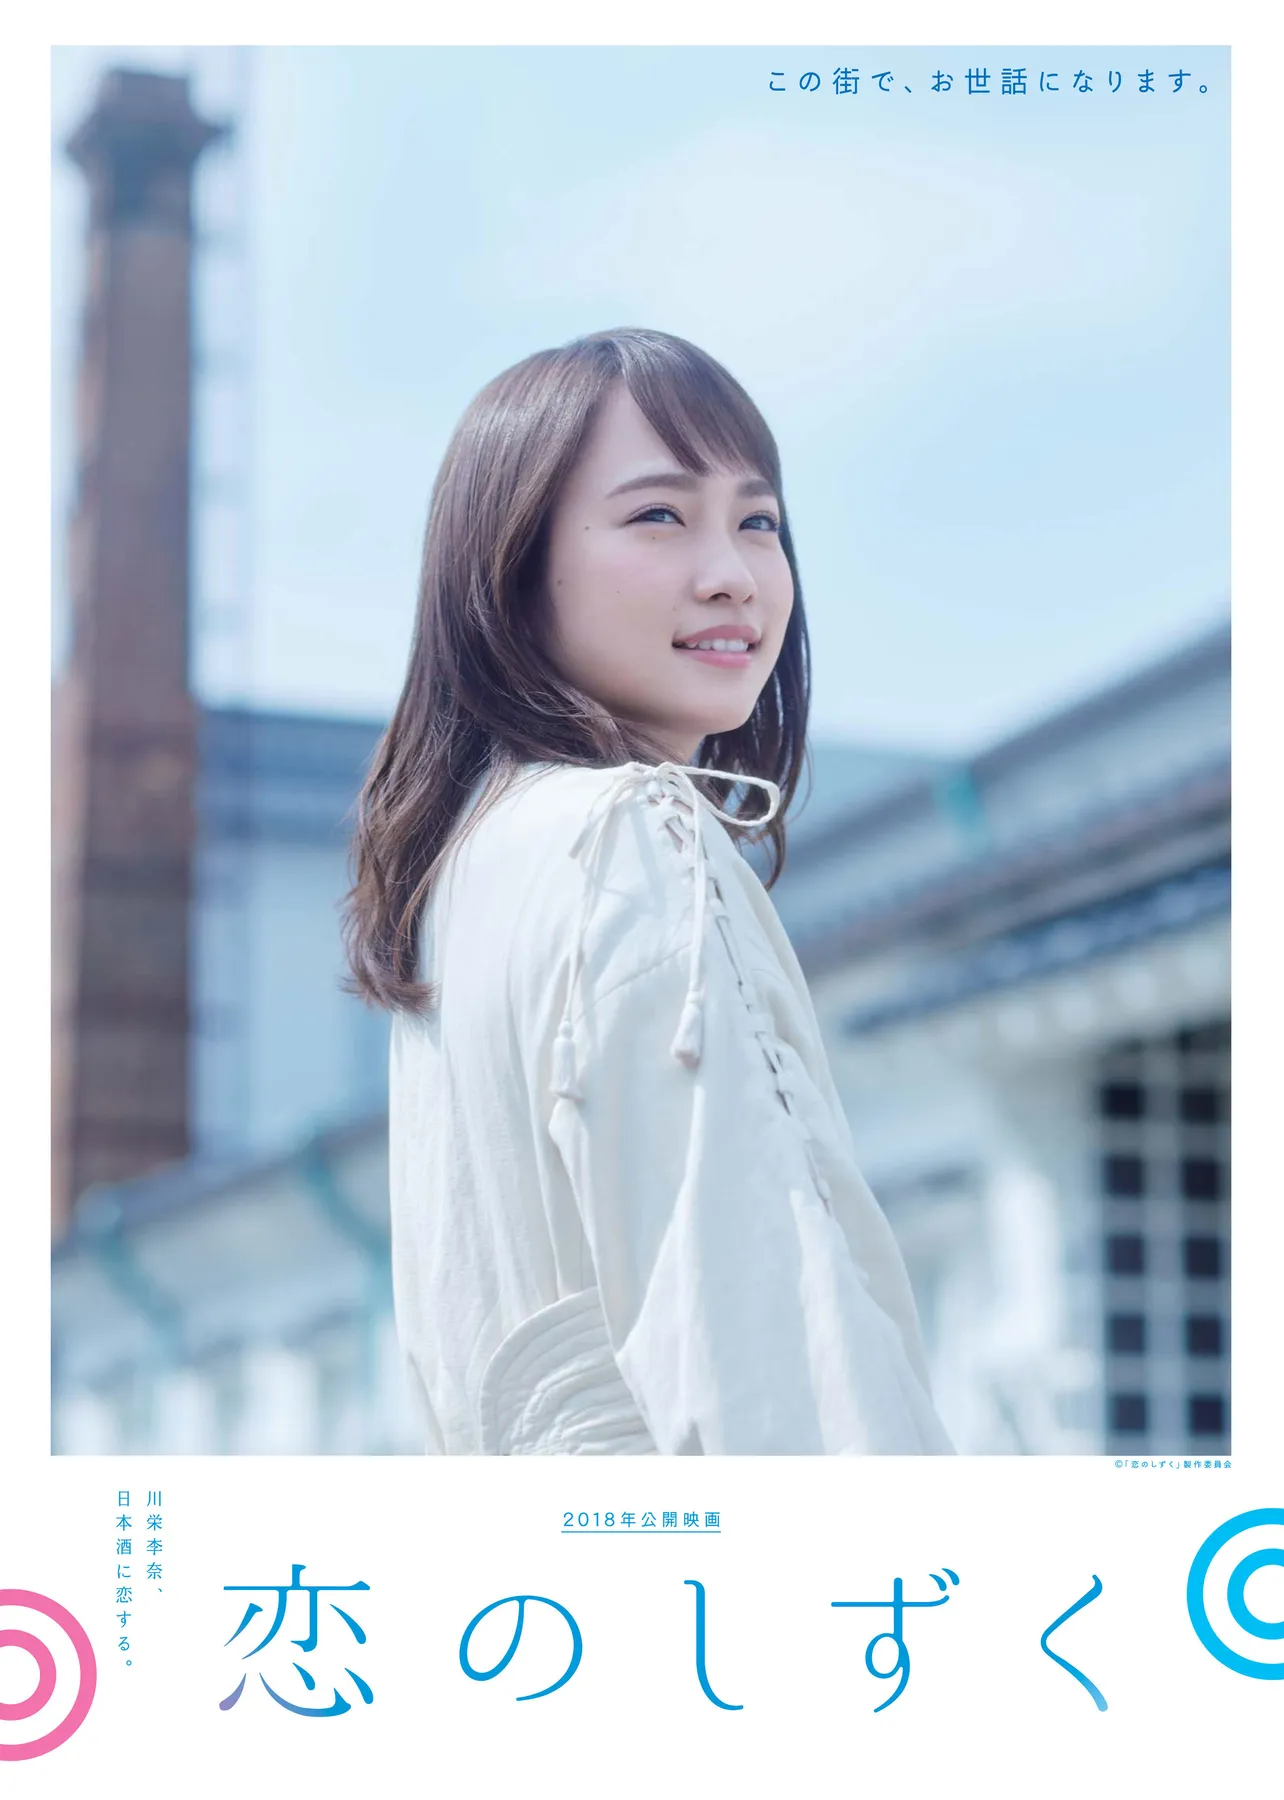 川栄李奈の初主演映画「恋のしずく」は2018年秋に全国ロードショー